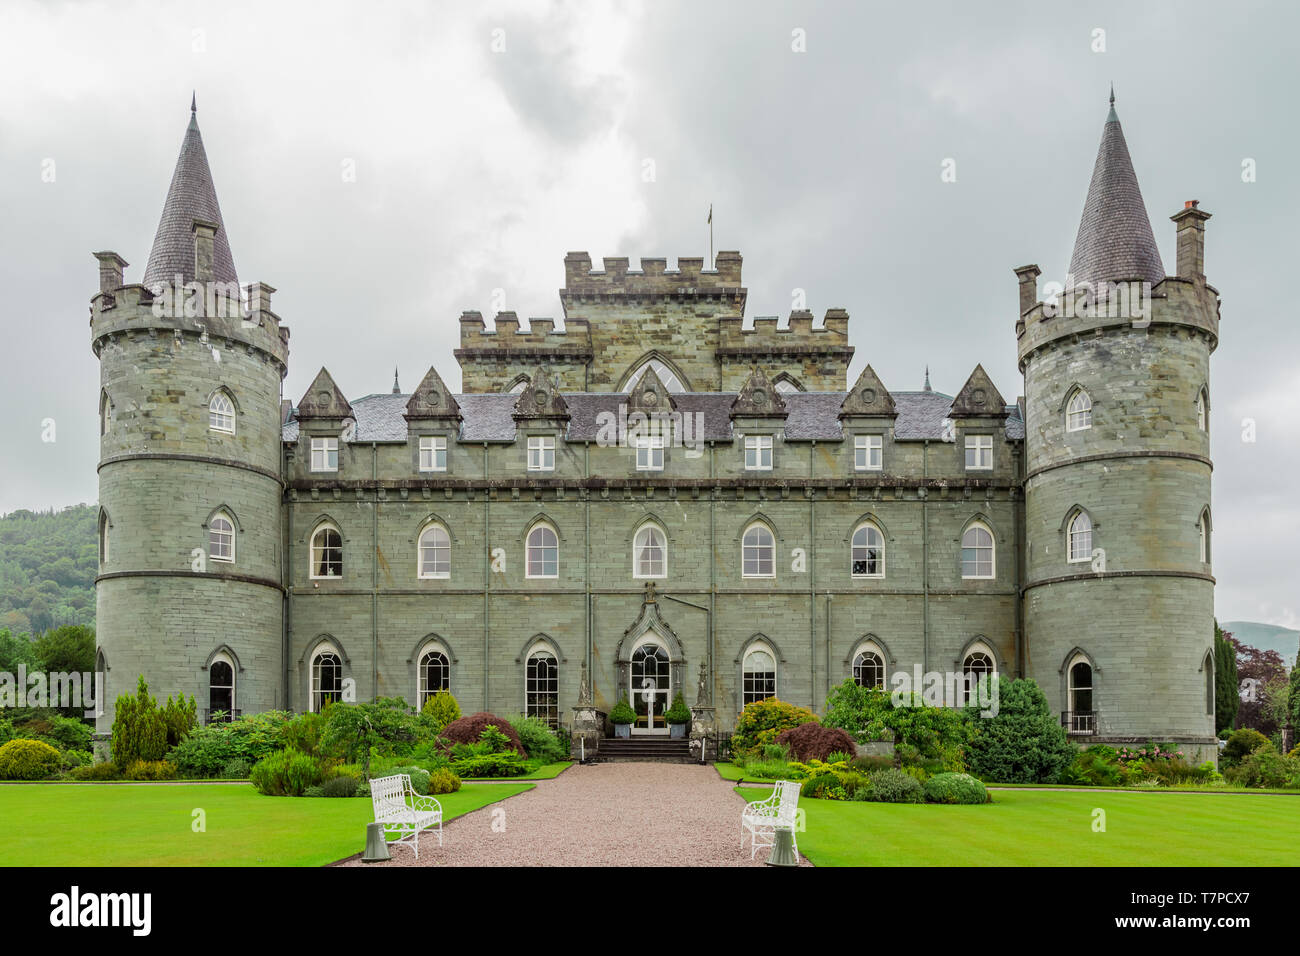 Inveraray, en Écosse, le 29 juin 2016 : château d'Inveraray, la maison ancestrale du duc d'Argyle. Banque D'Images